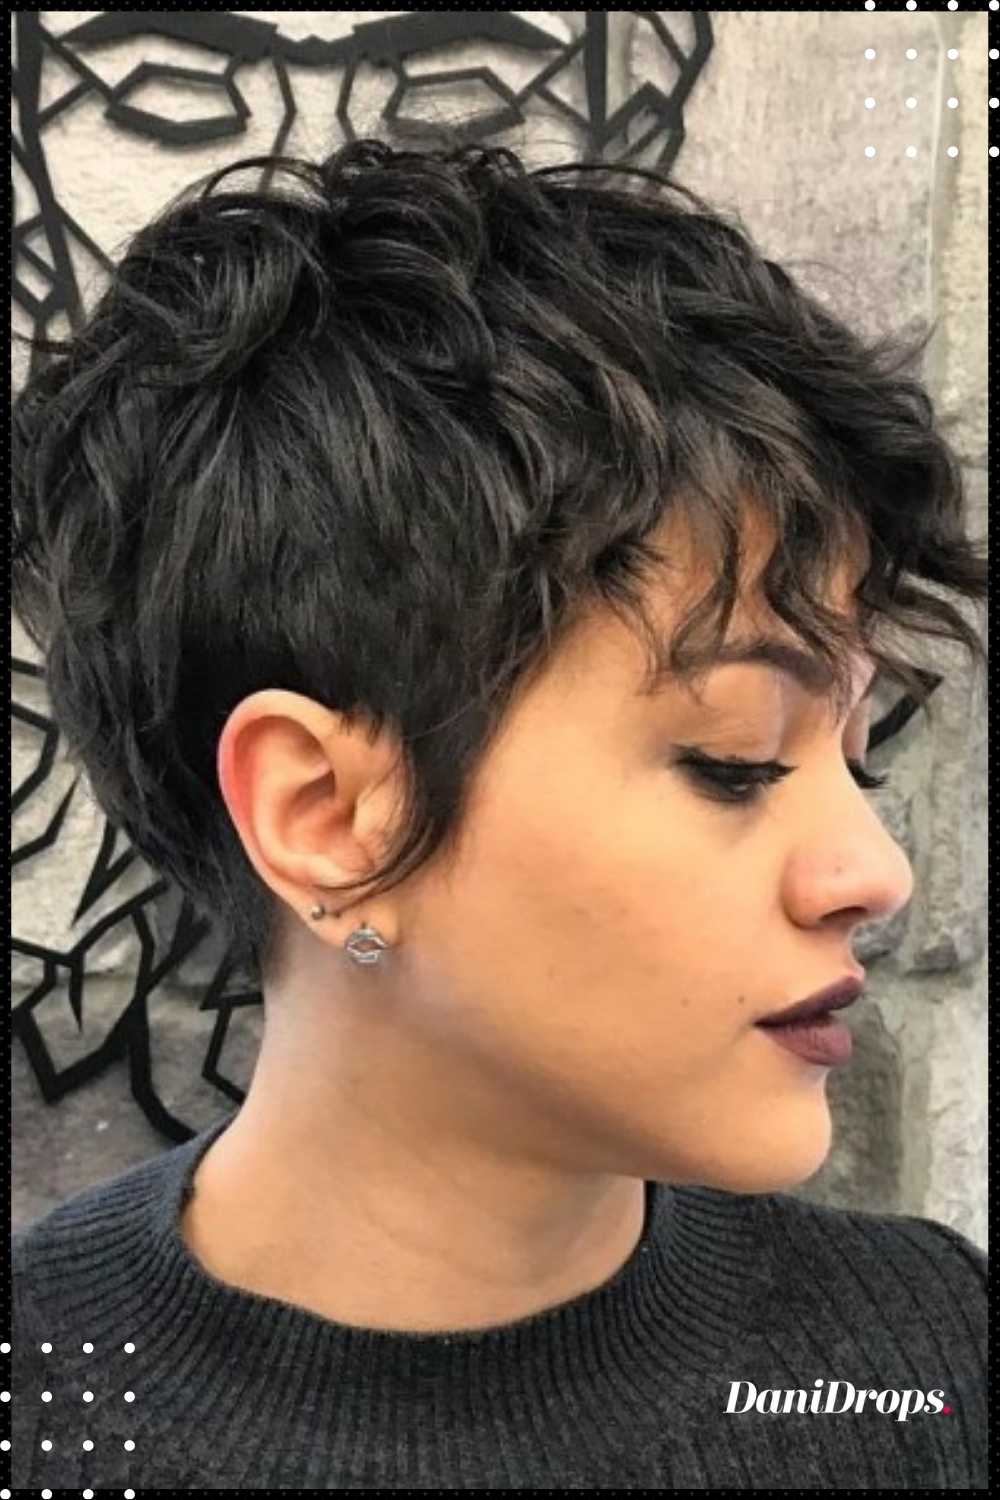 Tendência para os cabelos: Pixie Cut - Fashionistando